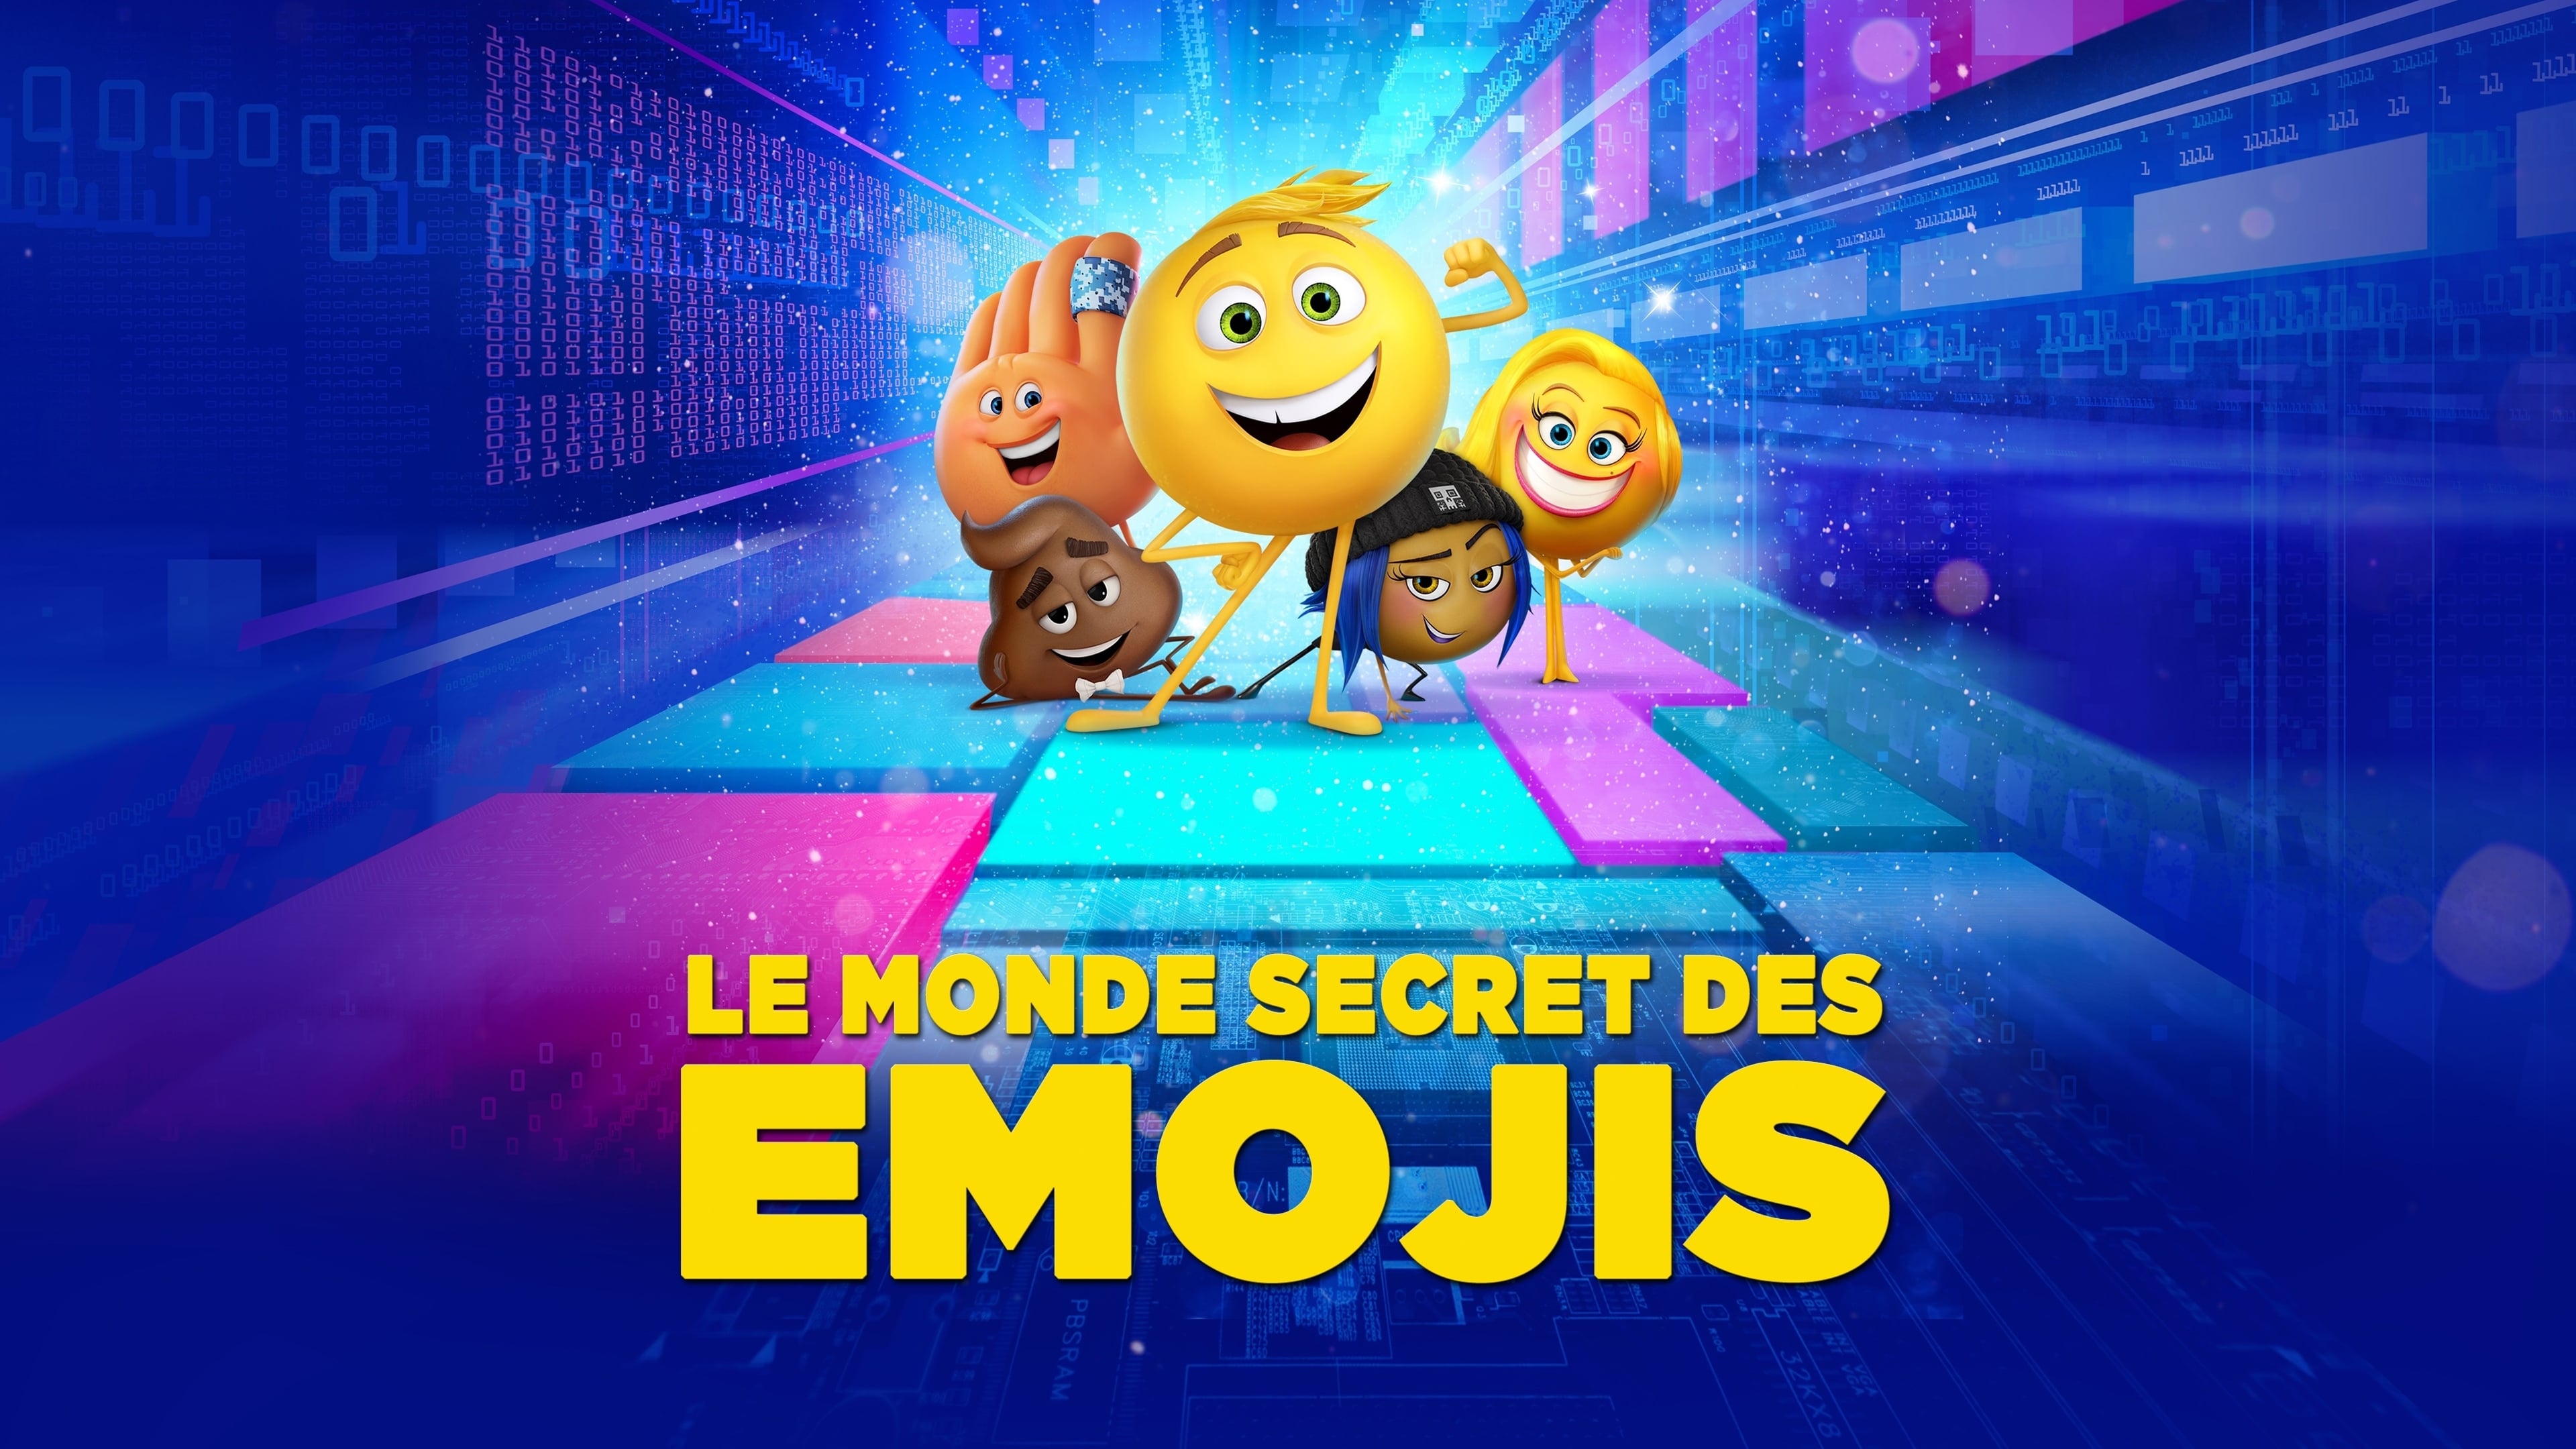 Emoji: La Película